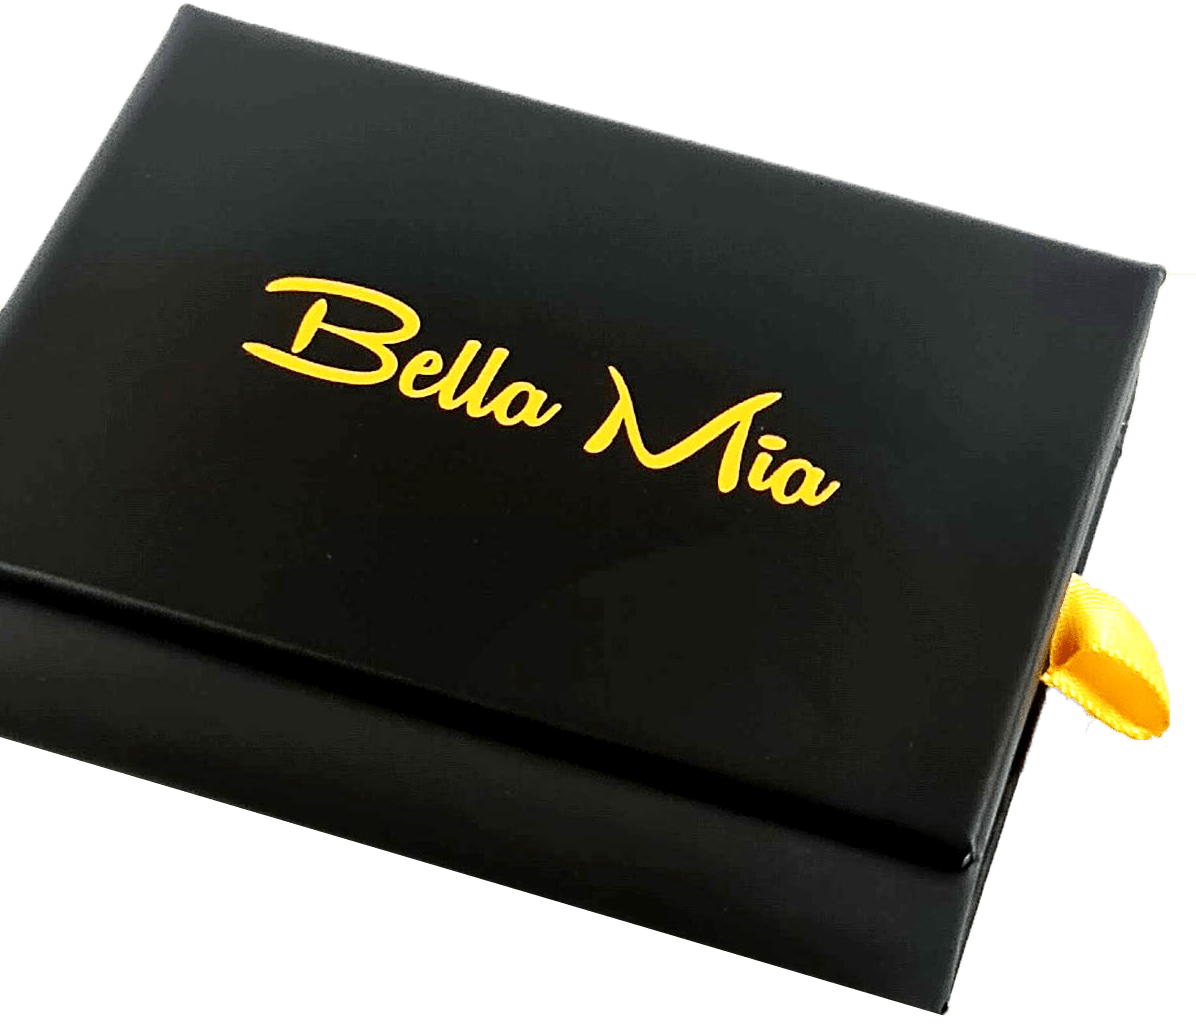 Prix du Meilleur Papy Personnalisé - Bella Mia